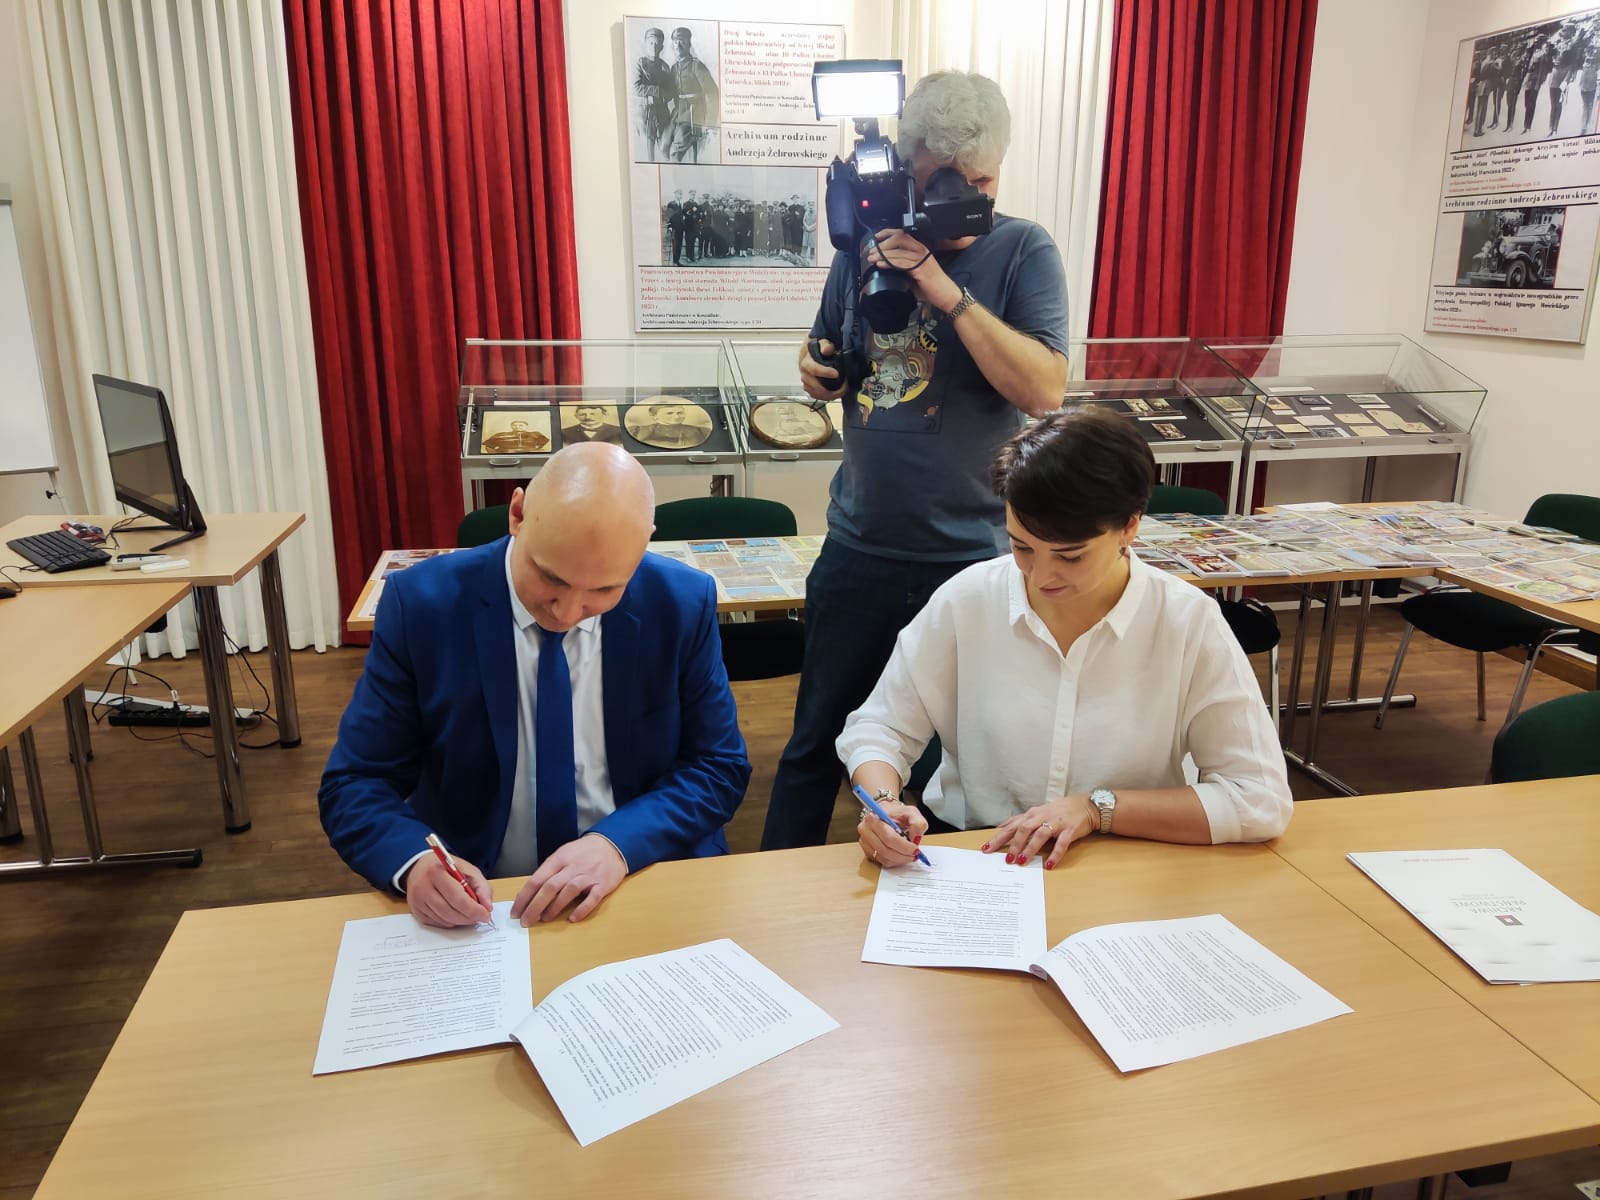 Wojciech Stylski i dyrektor Królczyk podpisują umowę. Za nimi mężczyzna z kamerą. Z tyłu stół zapełniony pocztówkami.